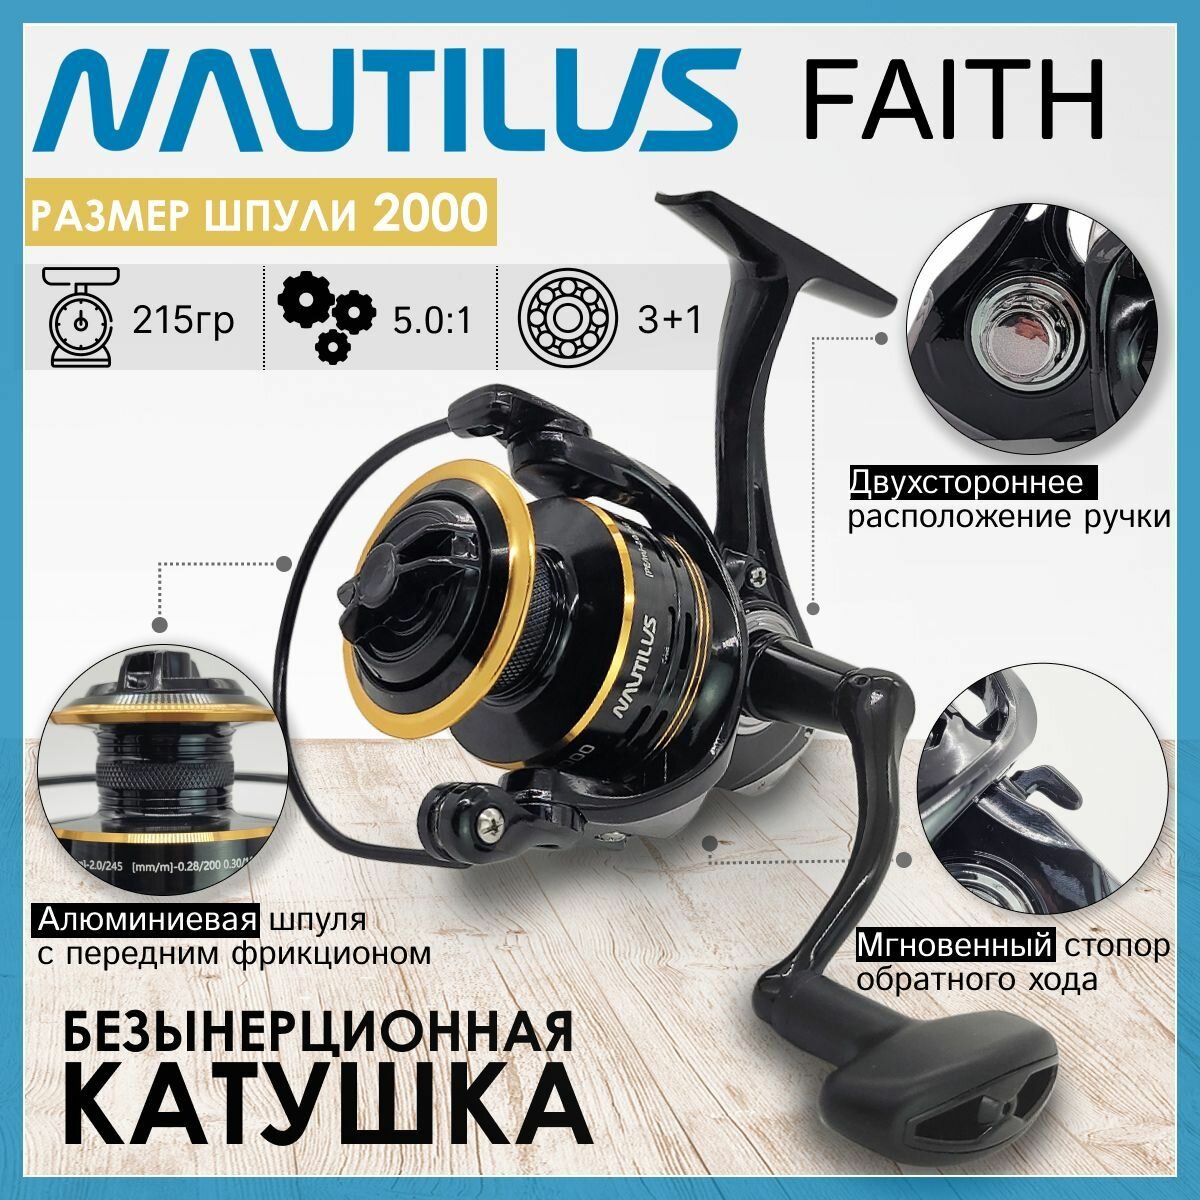 Катушка Nautilus FAITH 2000, с передним фрикционом